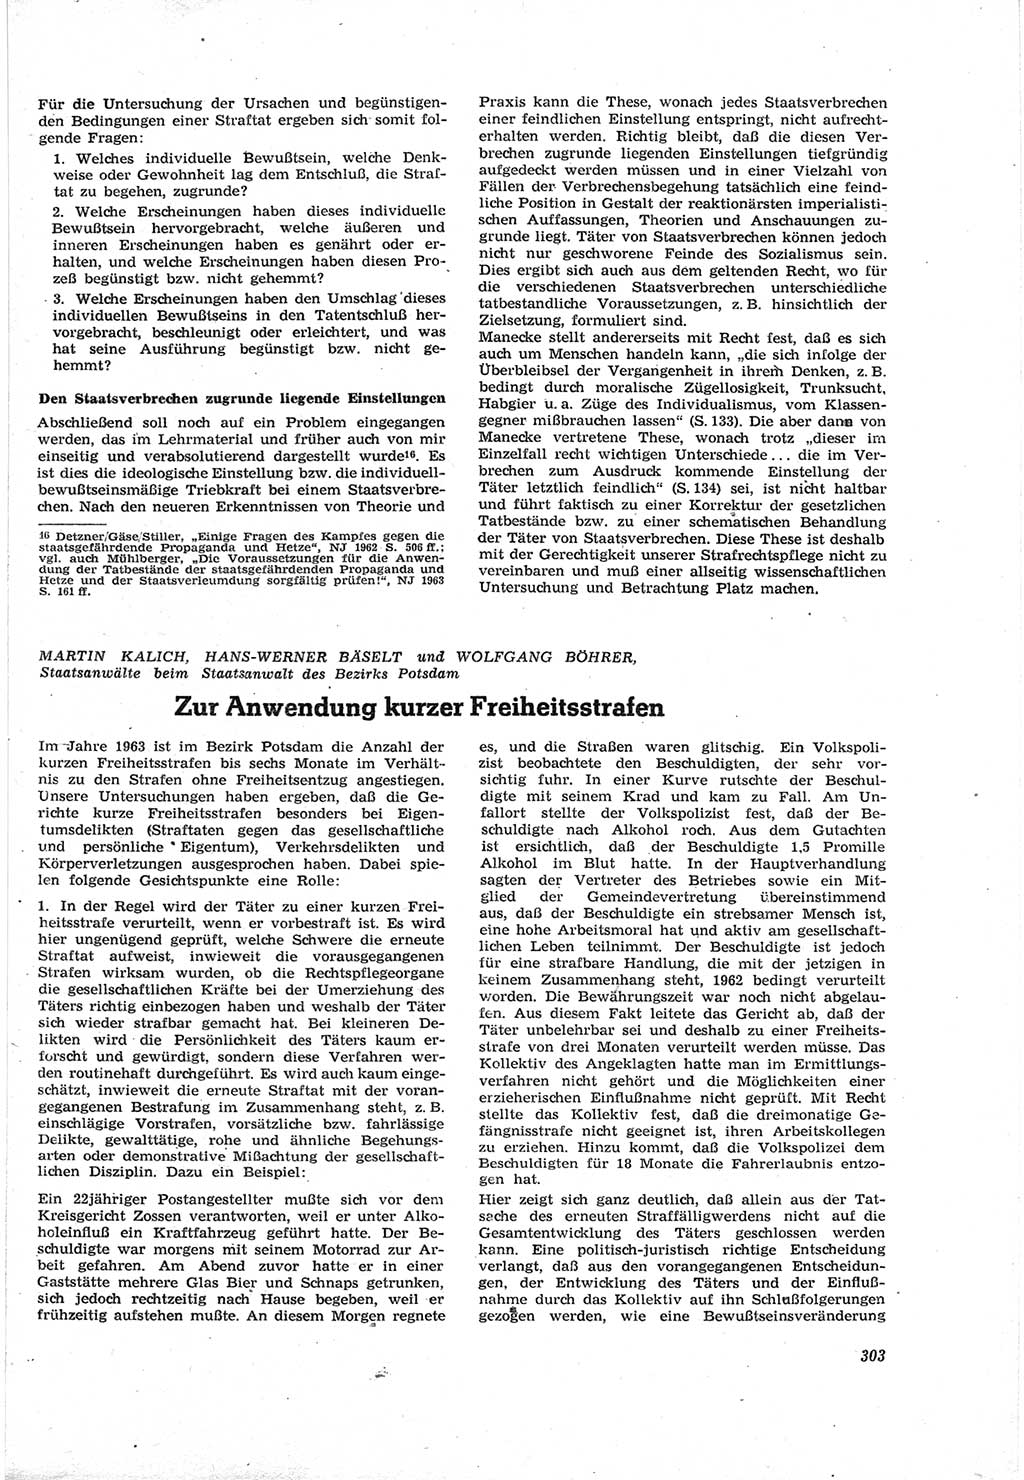 Neue Justiz (NJ), Zeitschrift für Recht und Rechtswissenschaft [Deutsche Demokratische Republik (DDR)], 18. Jahrgang 1964, Seite 303 (NJ DDR 1964, S. 303)